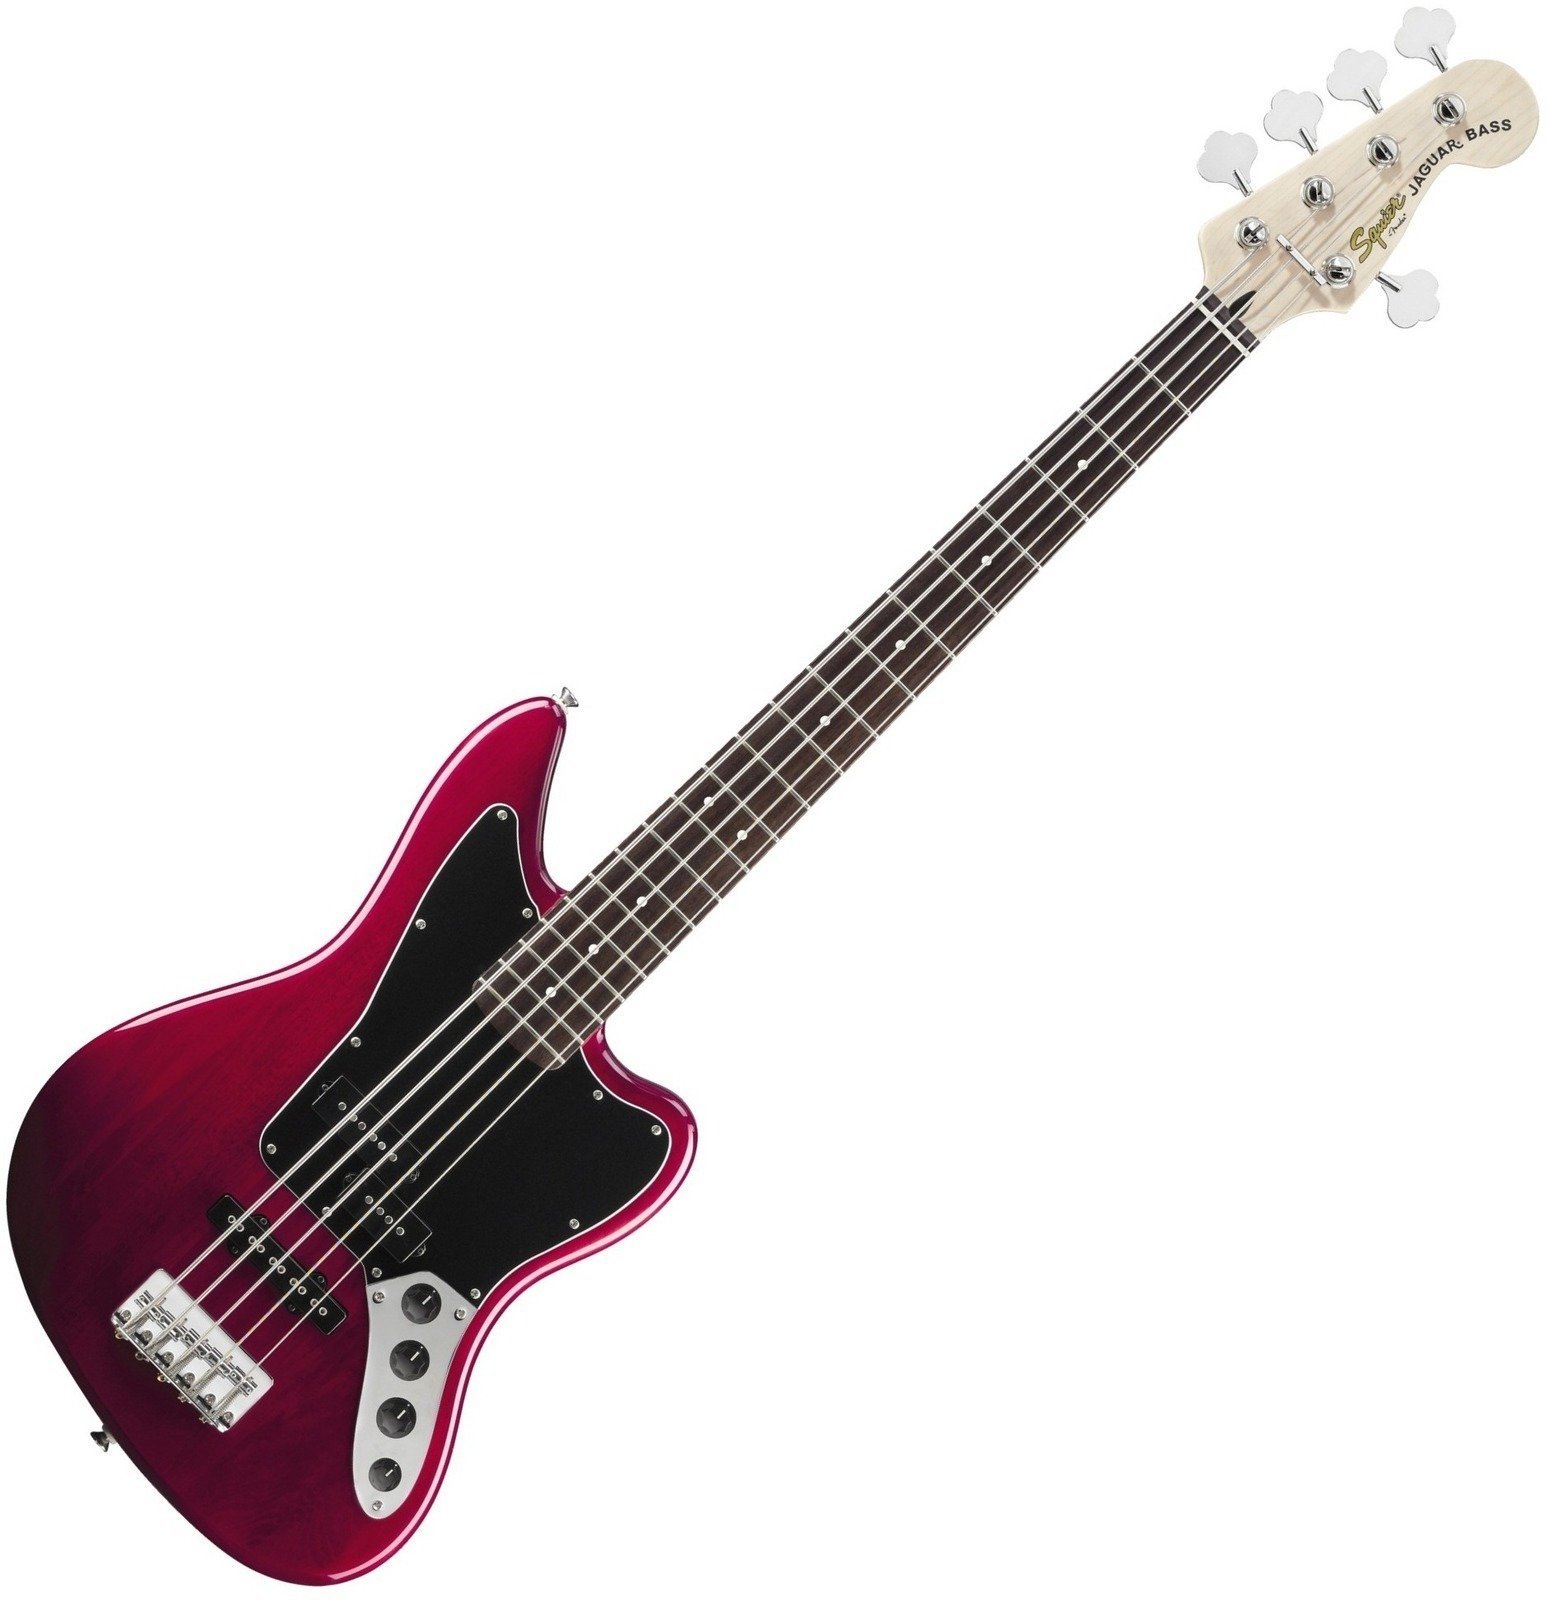 Baixo de 5 cordas Fender Squier Vintage Modified Jaguar Bass V Special 5 String Crimson Red Transparent